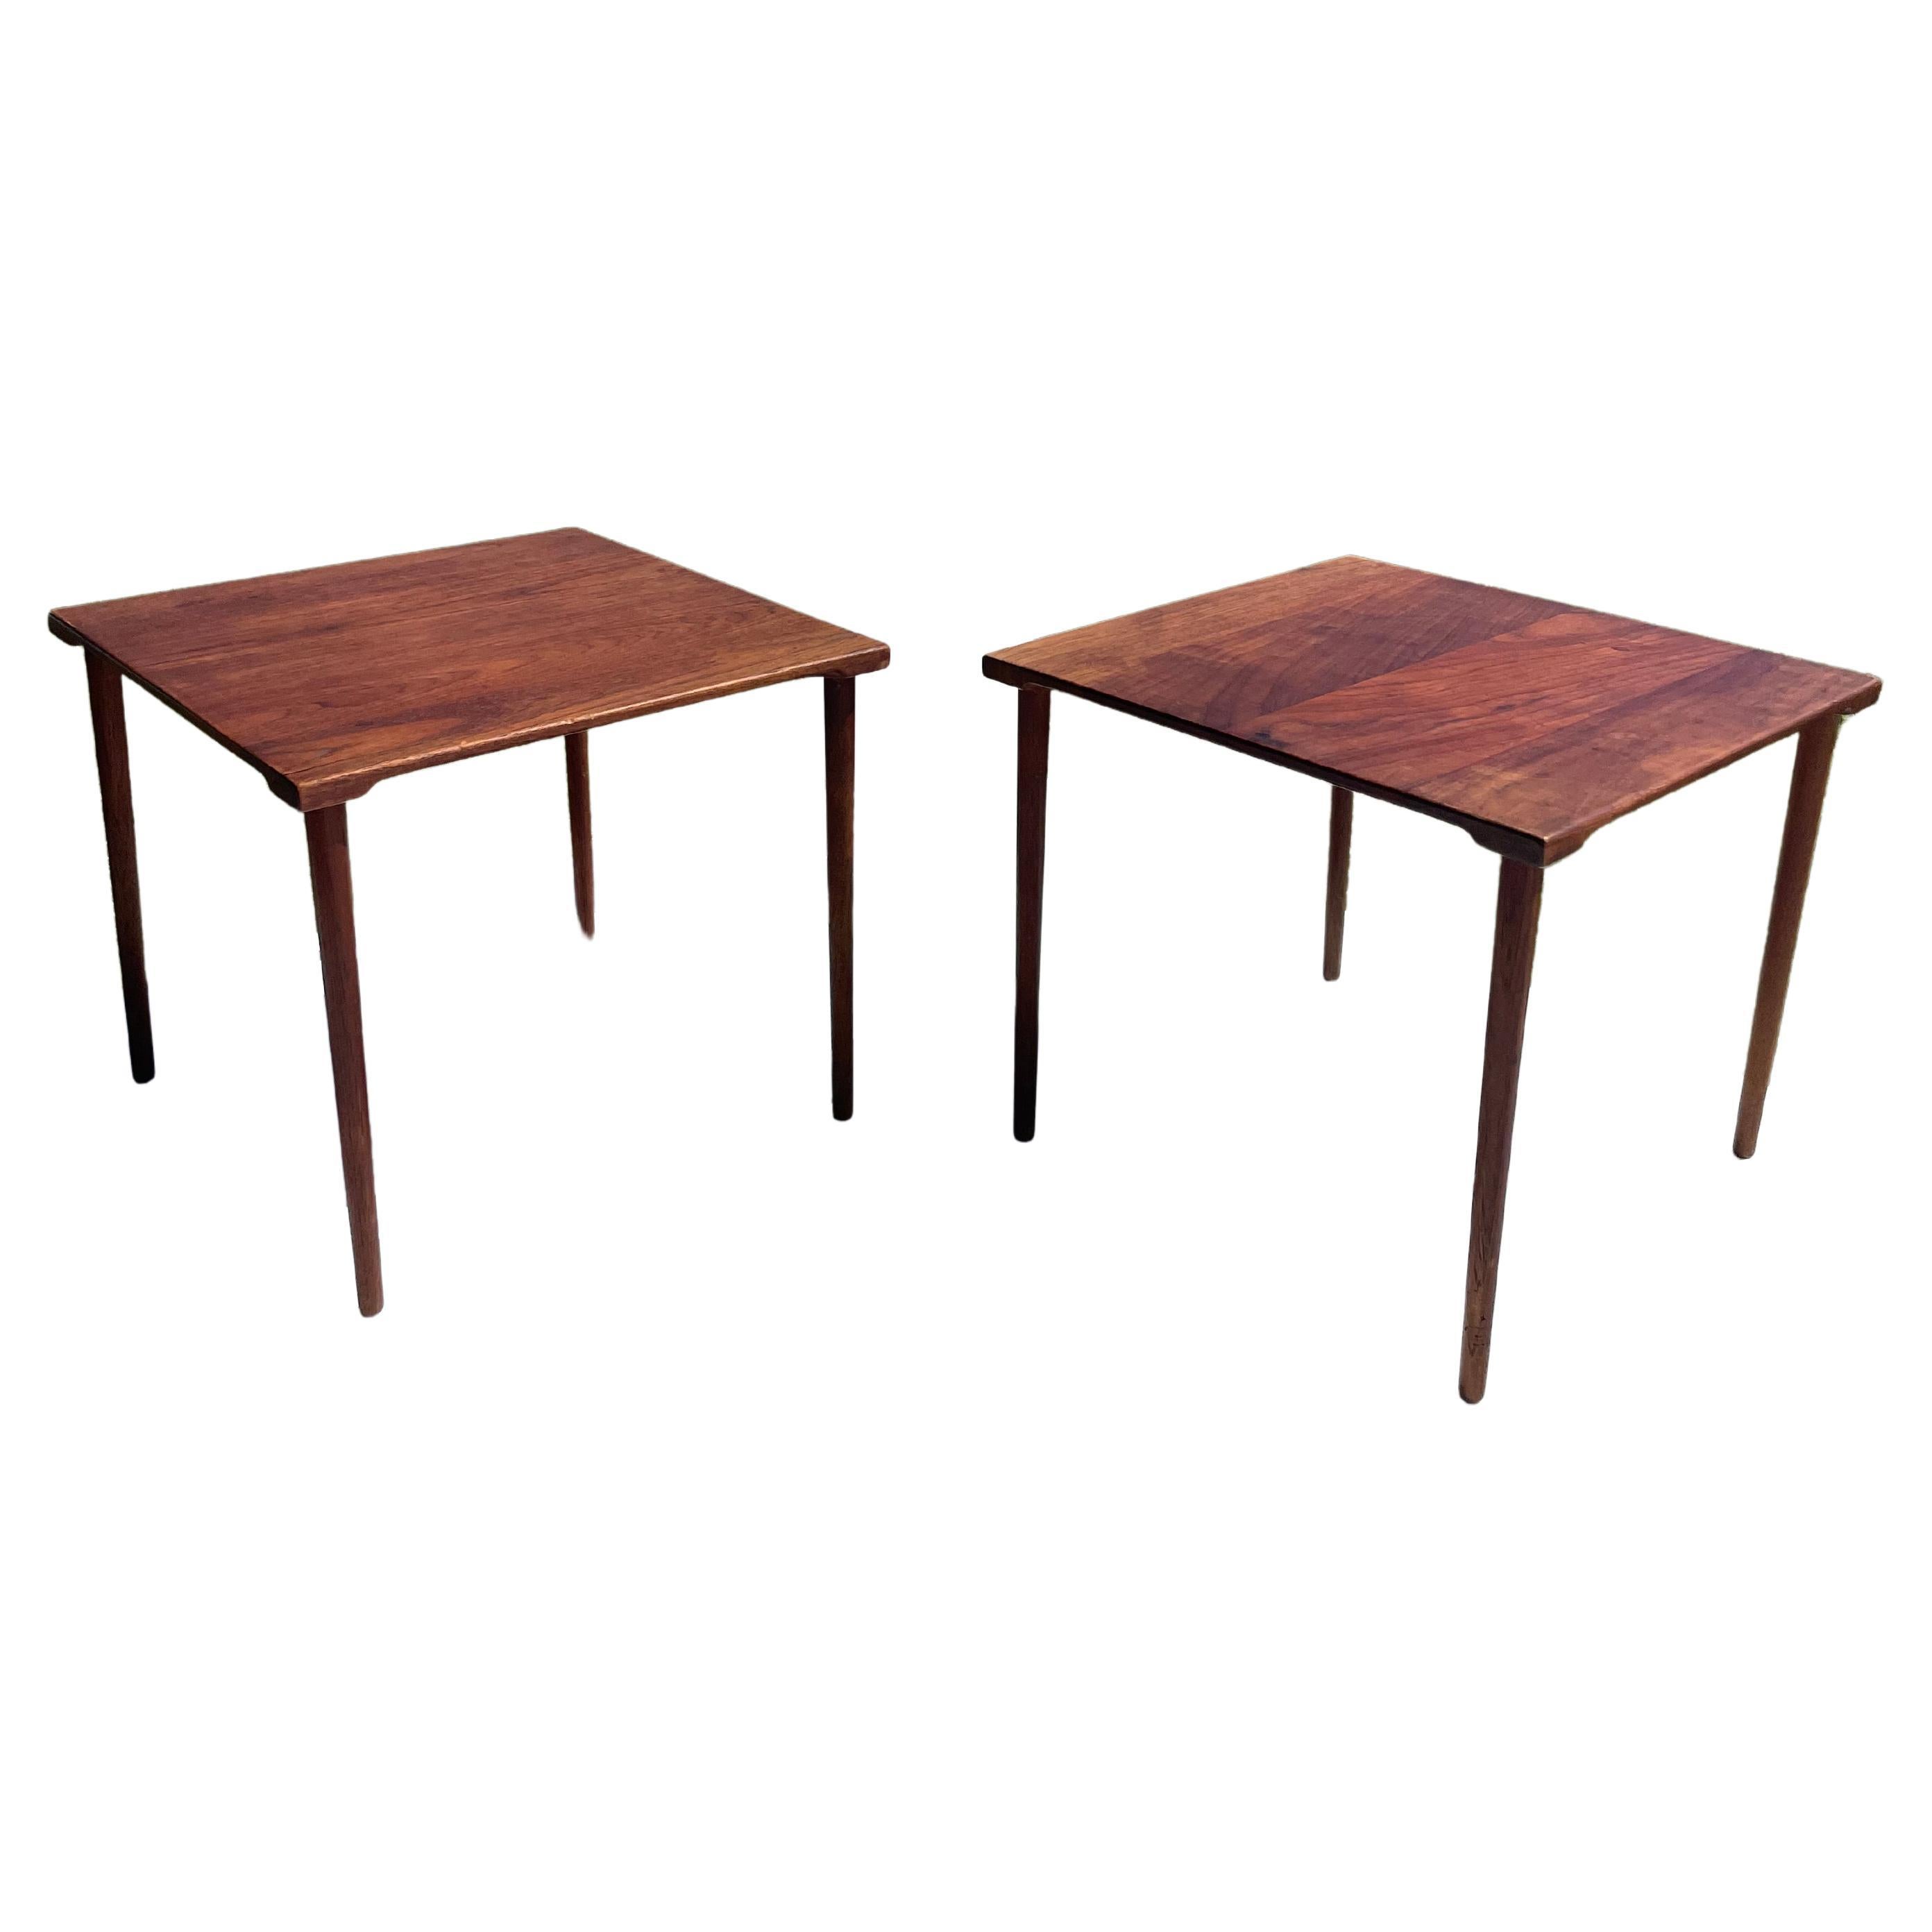 Pair of Danish Modern 1960s Teak Side Tables by Peter Hvidt for John Stuart Inc